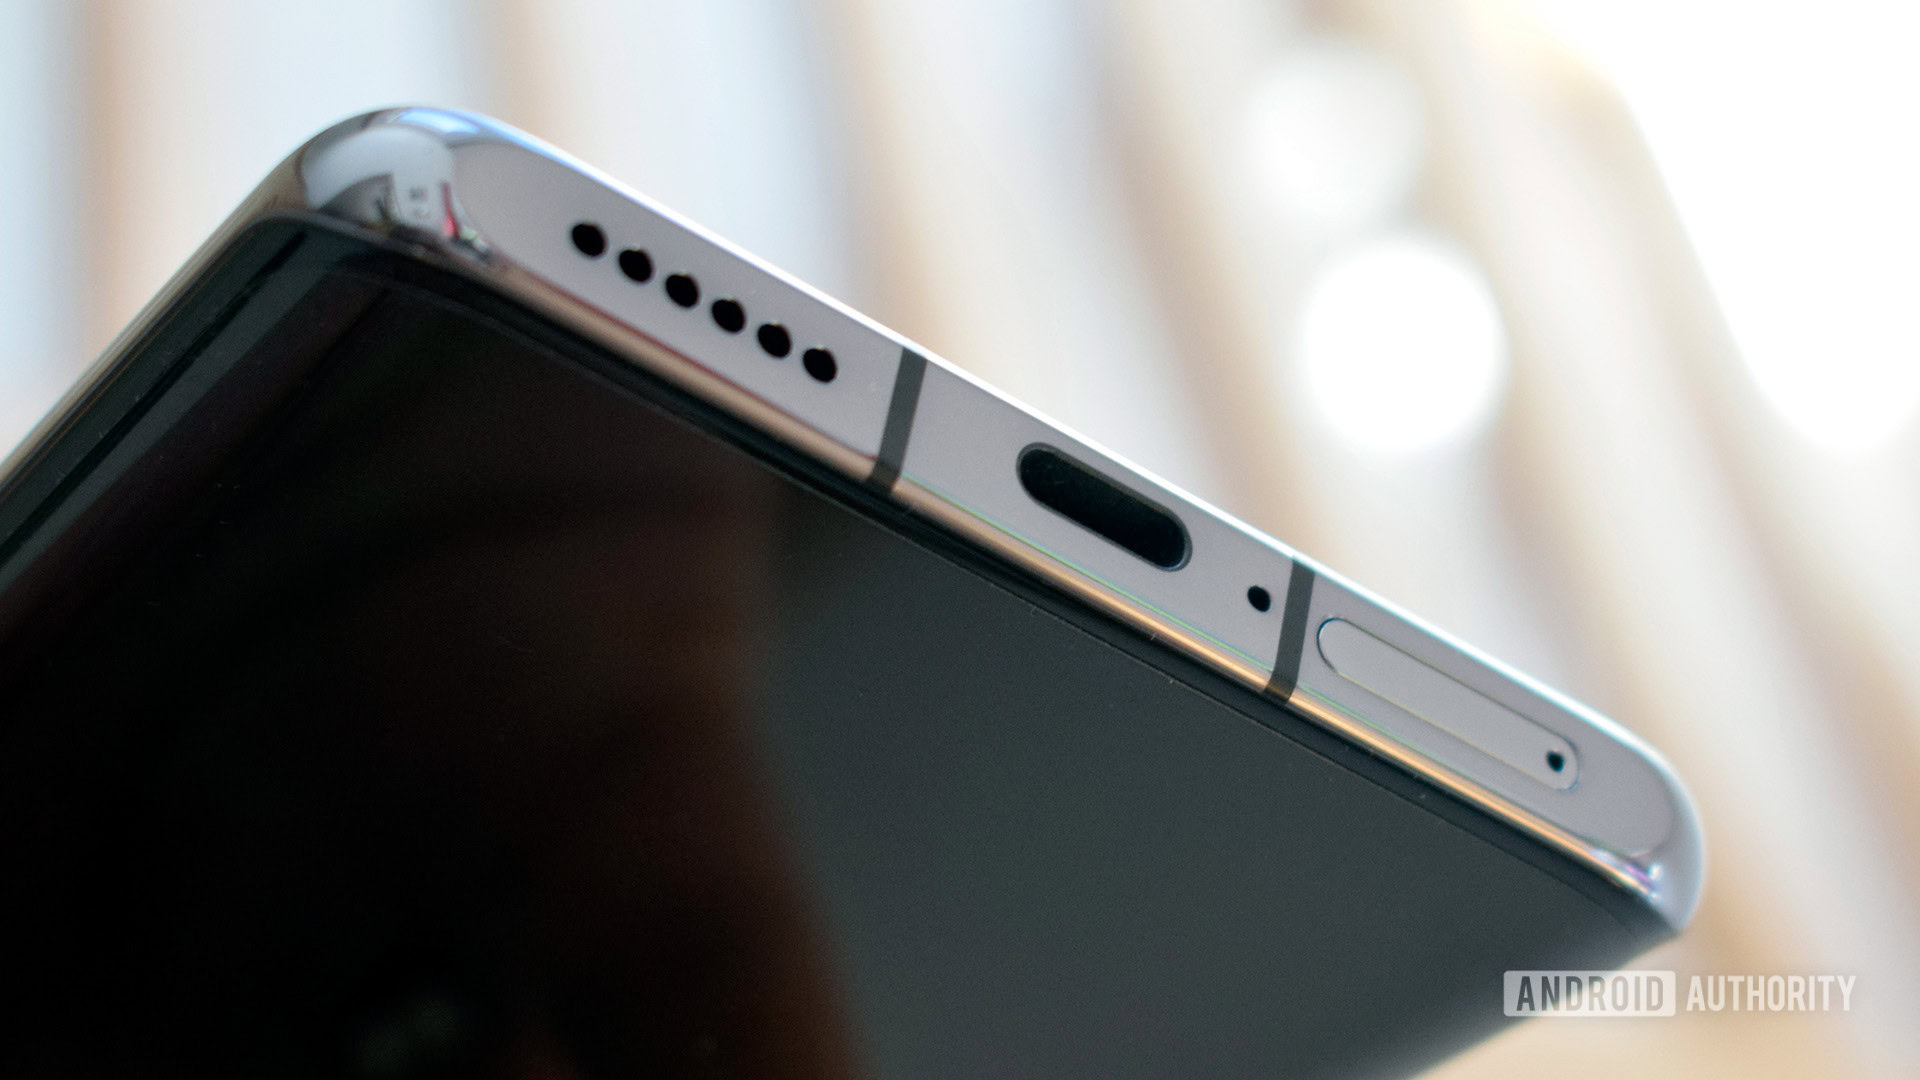 Huawei P50 Pro review: A mobile imaging powerhouse but no Google apps or 5G  - Techgoondu